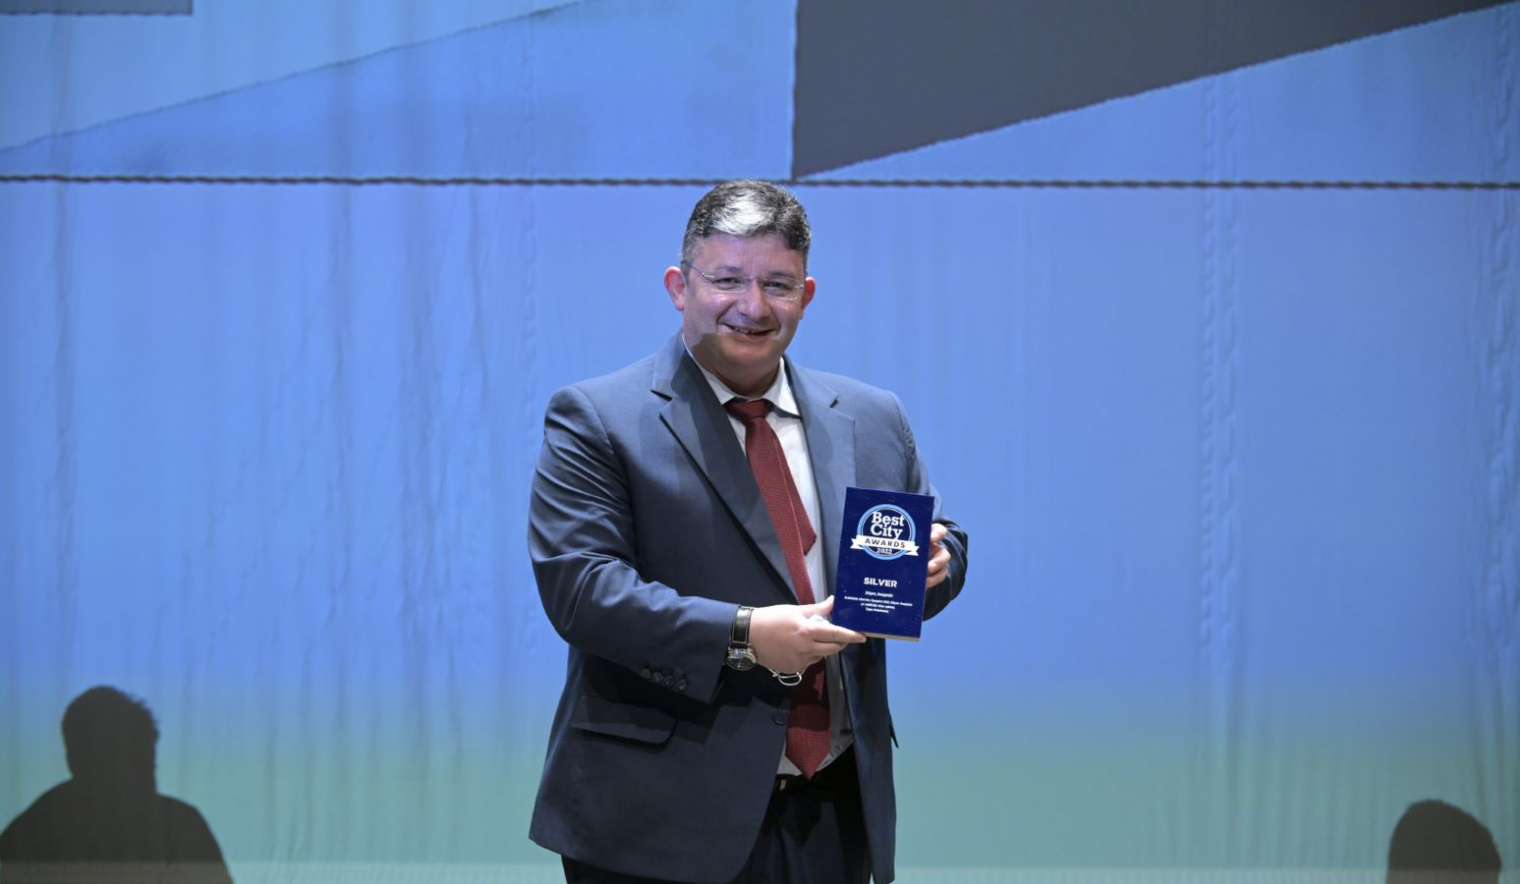 Αργυρό βραβείο για τον Δήμο Αχαρνών στα «Best City Awards 2022»